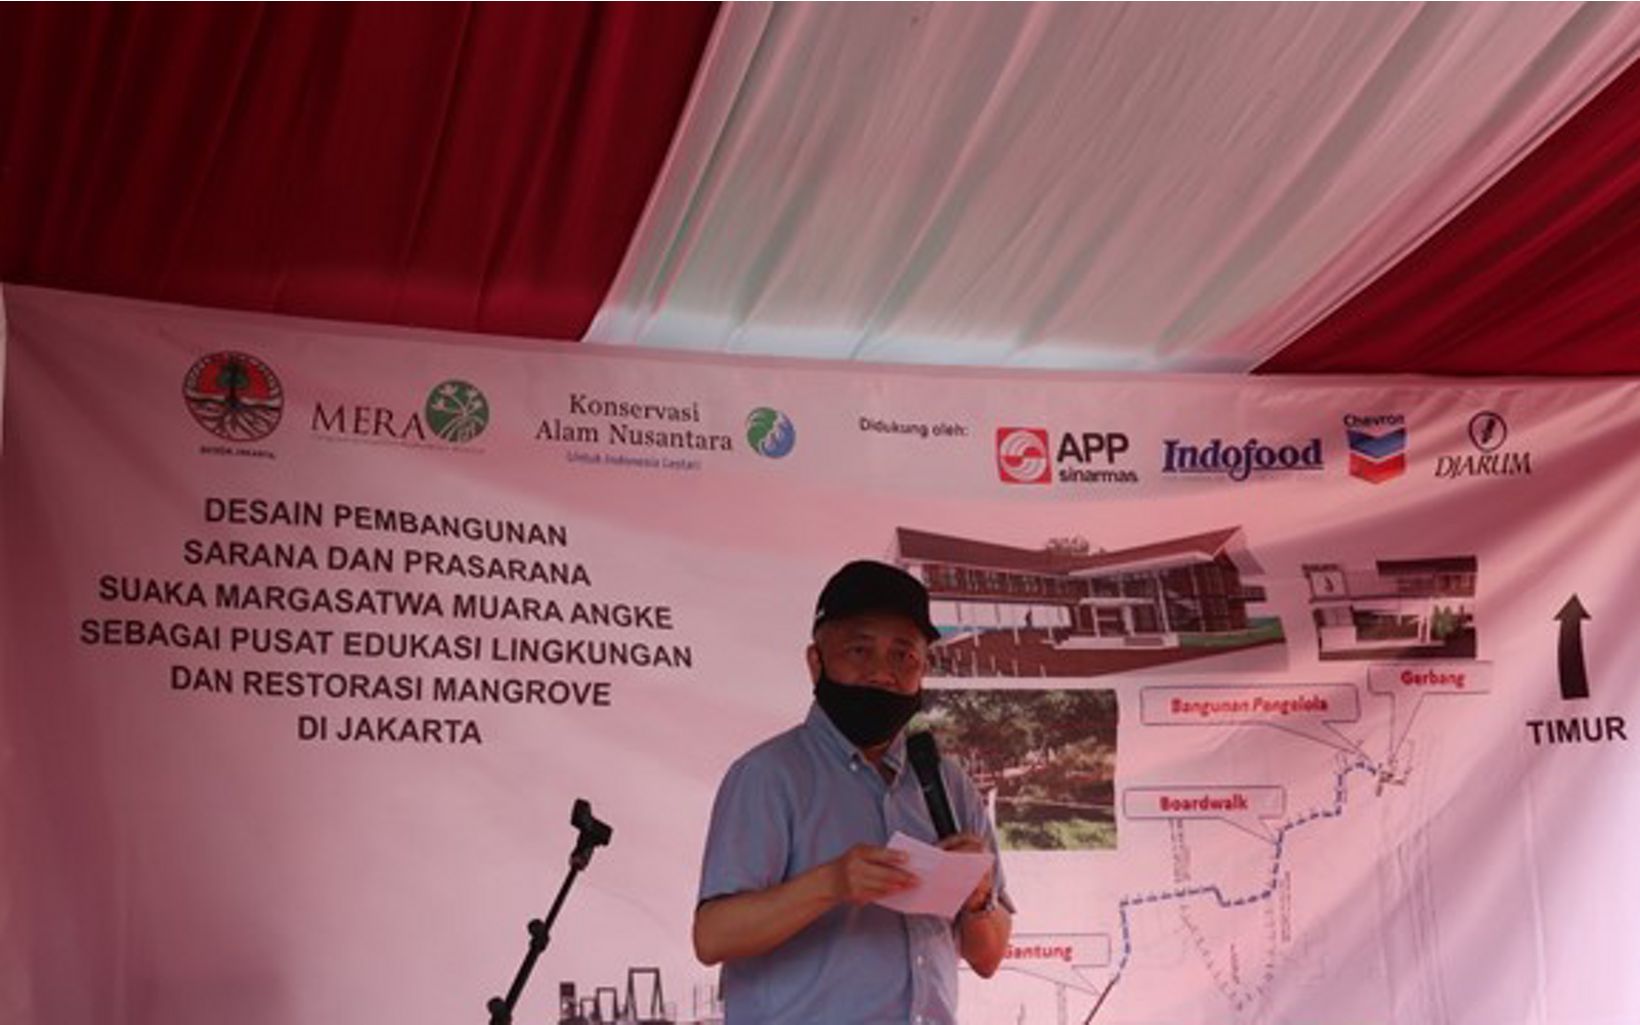 
                
                  Pidato Direktur Jenderal KSDAE KLHK Wiratno memberikan pidato dalam acara Peletakan Batu Pertama Pembangunan Sarana dan Prasarana Suaka Margasatwa Muara Angke (SMMA) Jakarta.
                  © Dzimar Akbarur Rokhim - YKAN
                
              